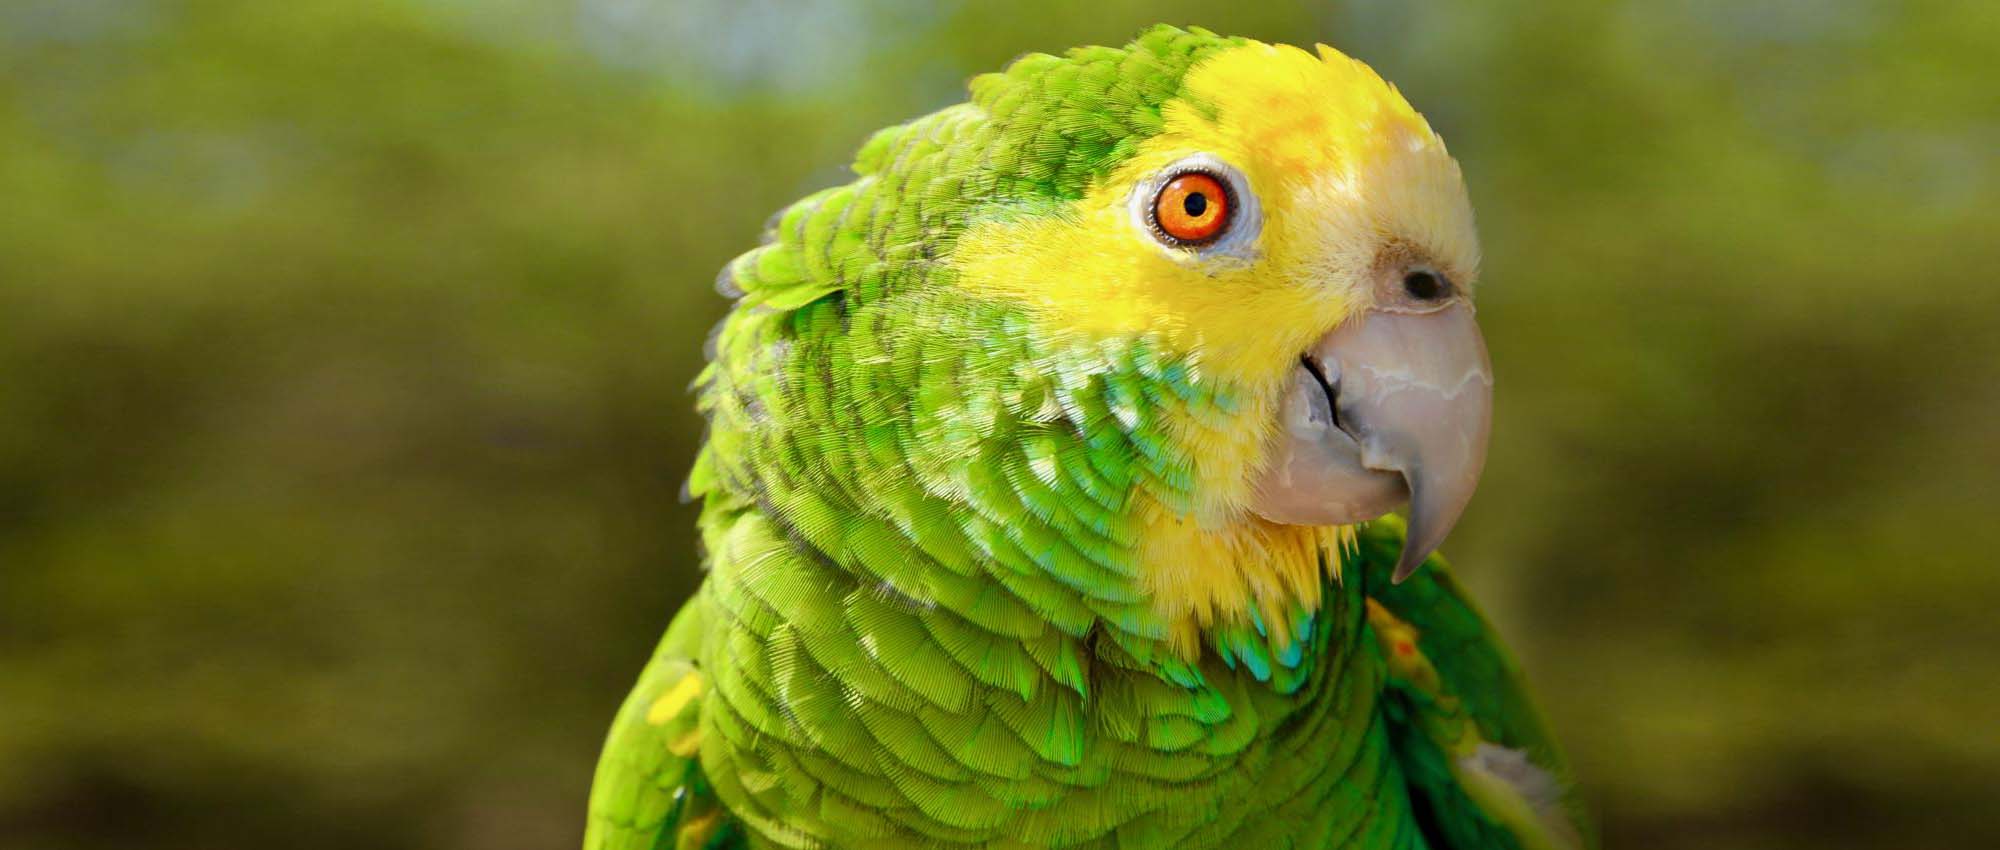 Close-up opname van een groen en geel vogeltje